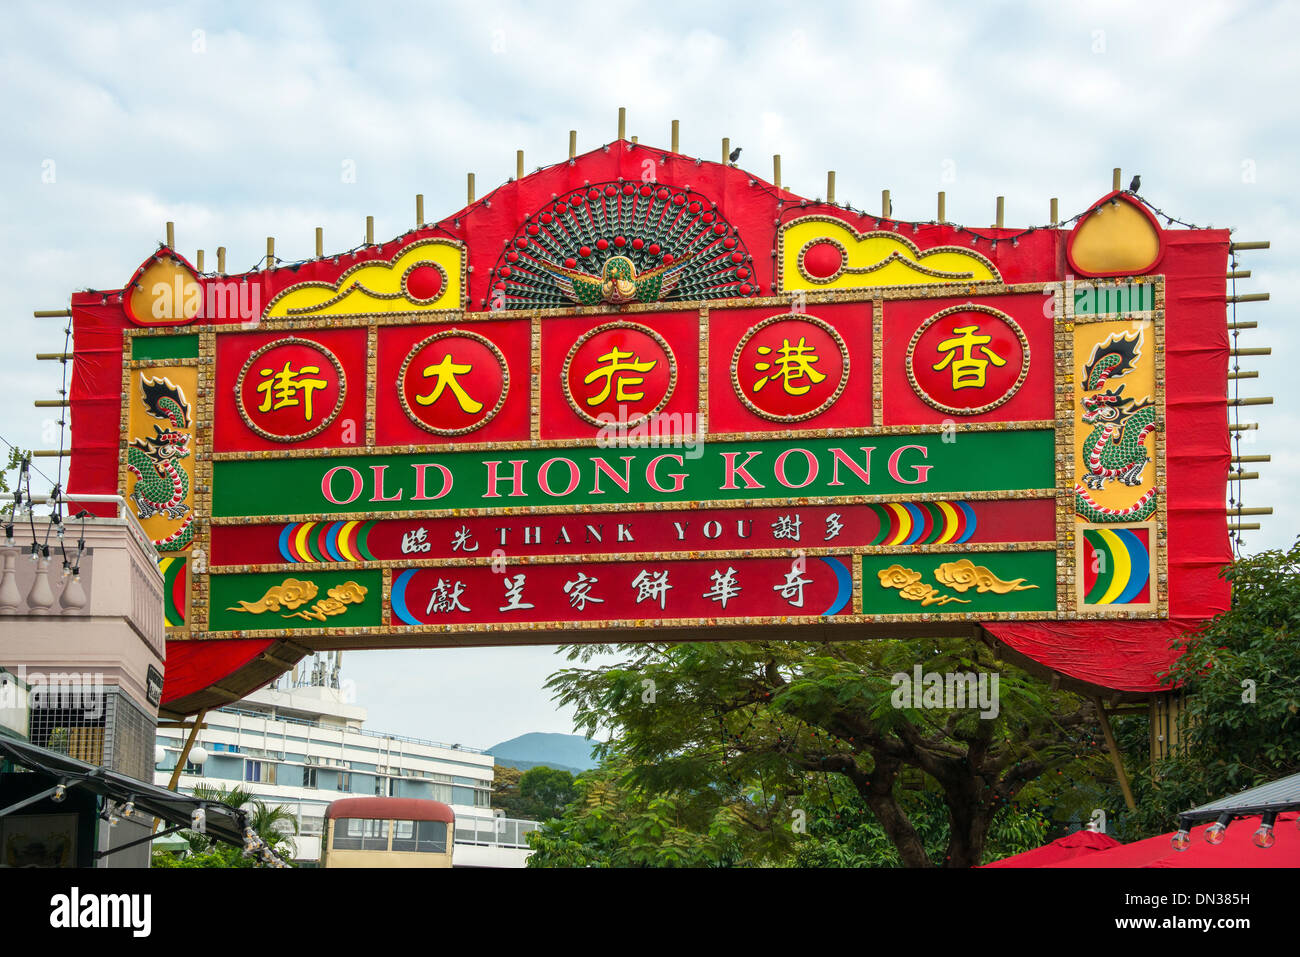 Old Hong Kong sign, Ocean Park, Hong Kong Stock Photo